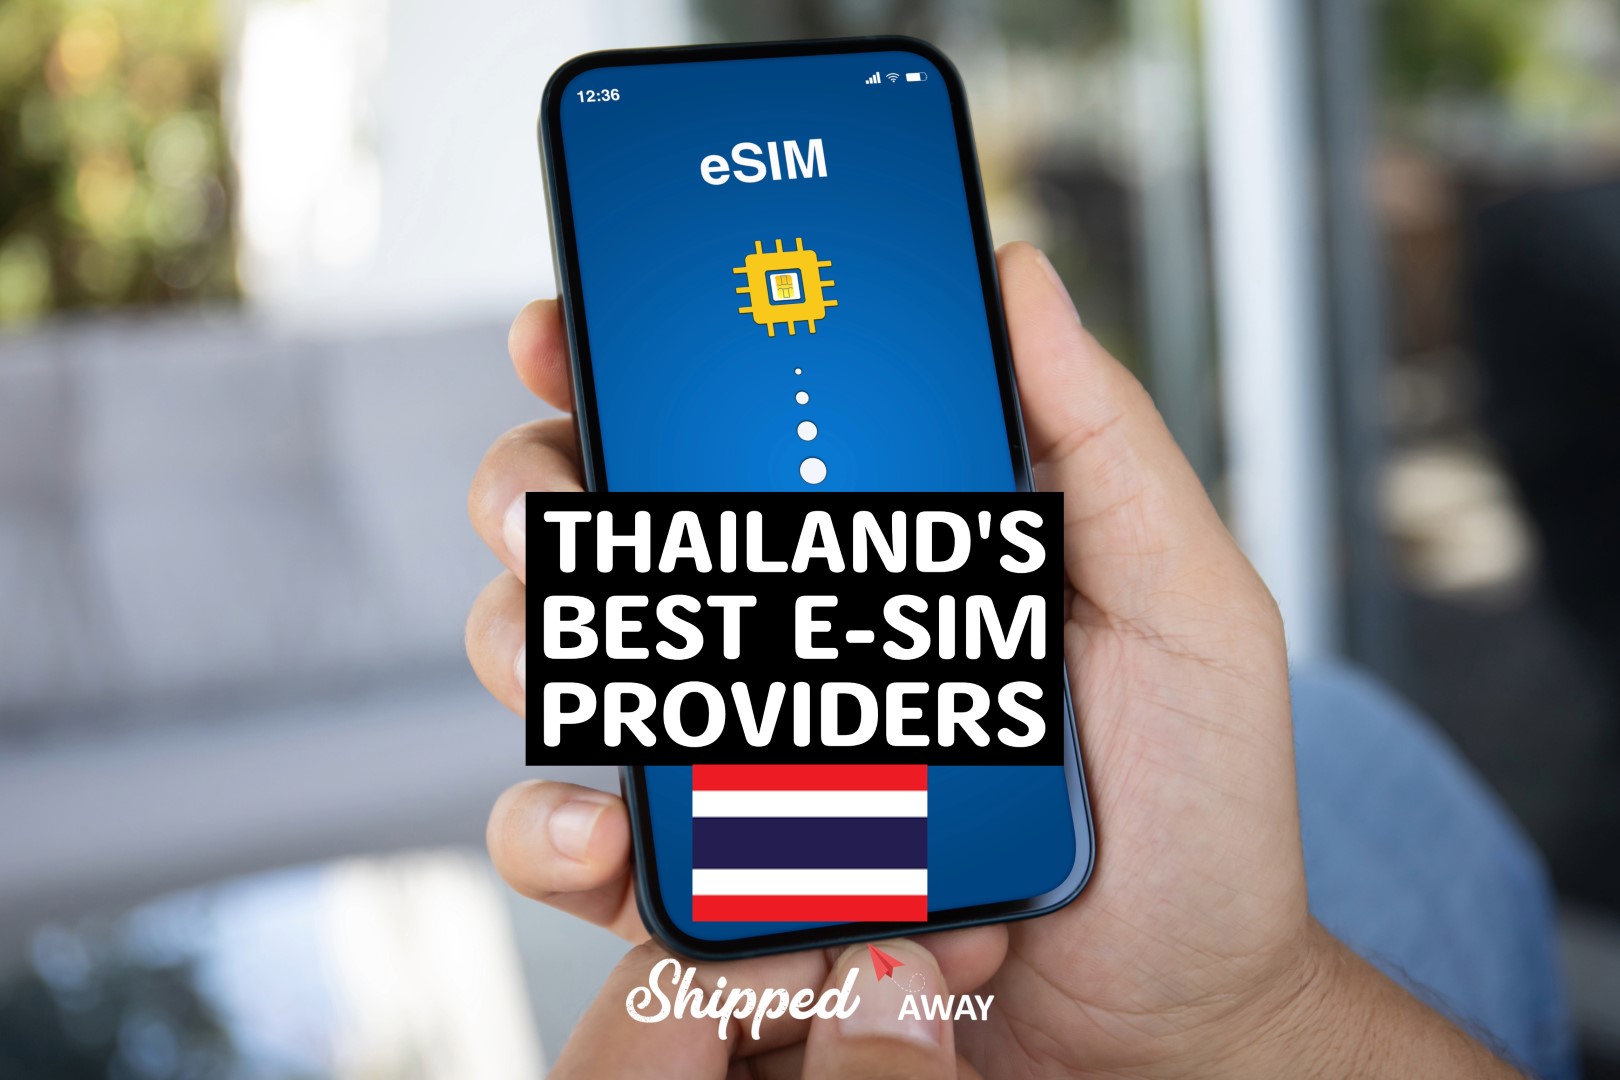 Best Thailand eSIMS - Best Thailand eSIM providers - Best Thailand eSIM Cards - Best Thailand Travel eSIM